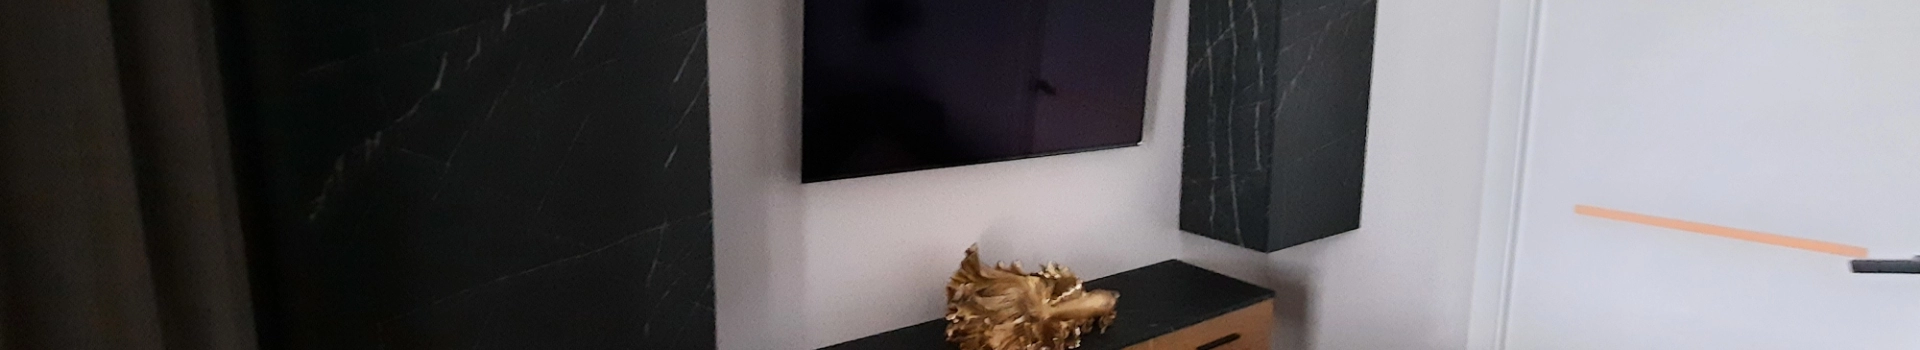 telewizor na ścianie w salonie